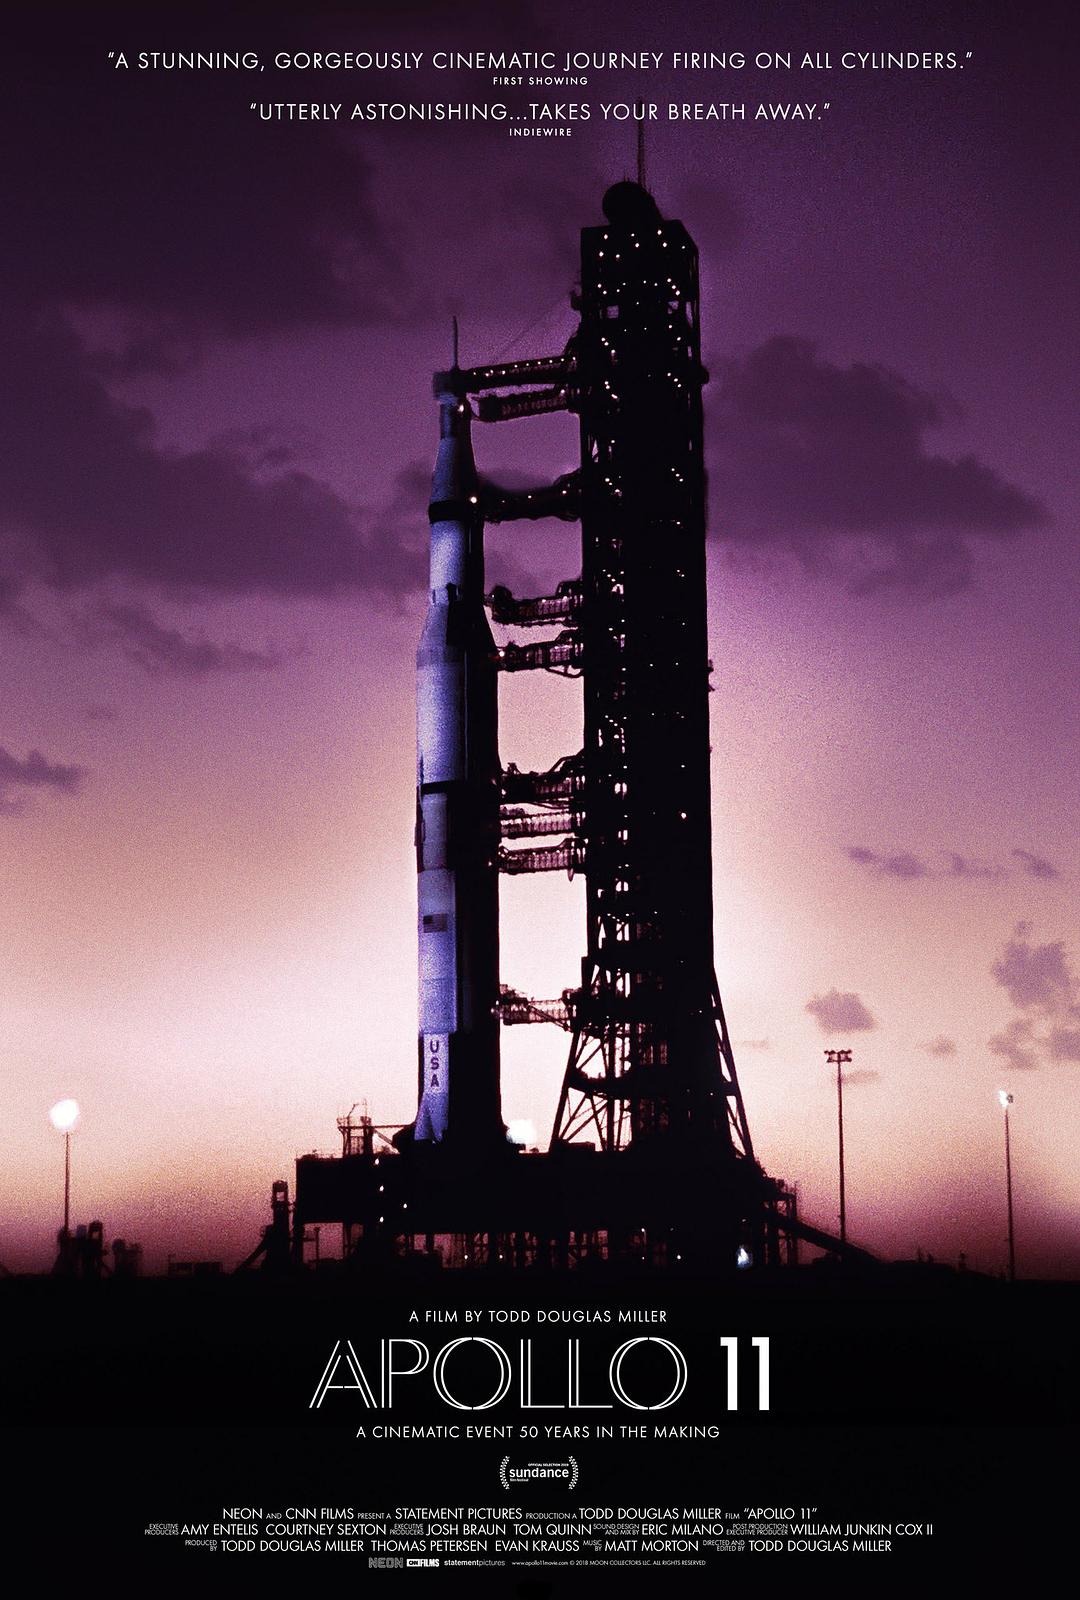 阿波罗11号 蓝光原盘下载+高清MKV版/阿波罗登月 2019 Apollo 11 18.7G